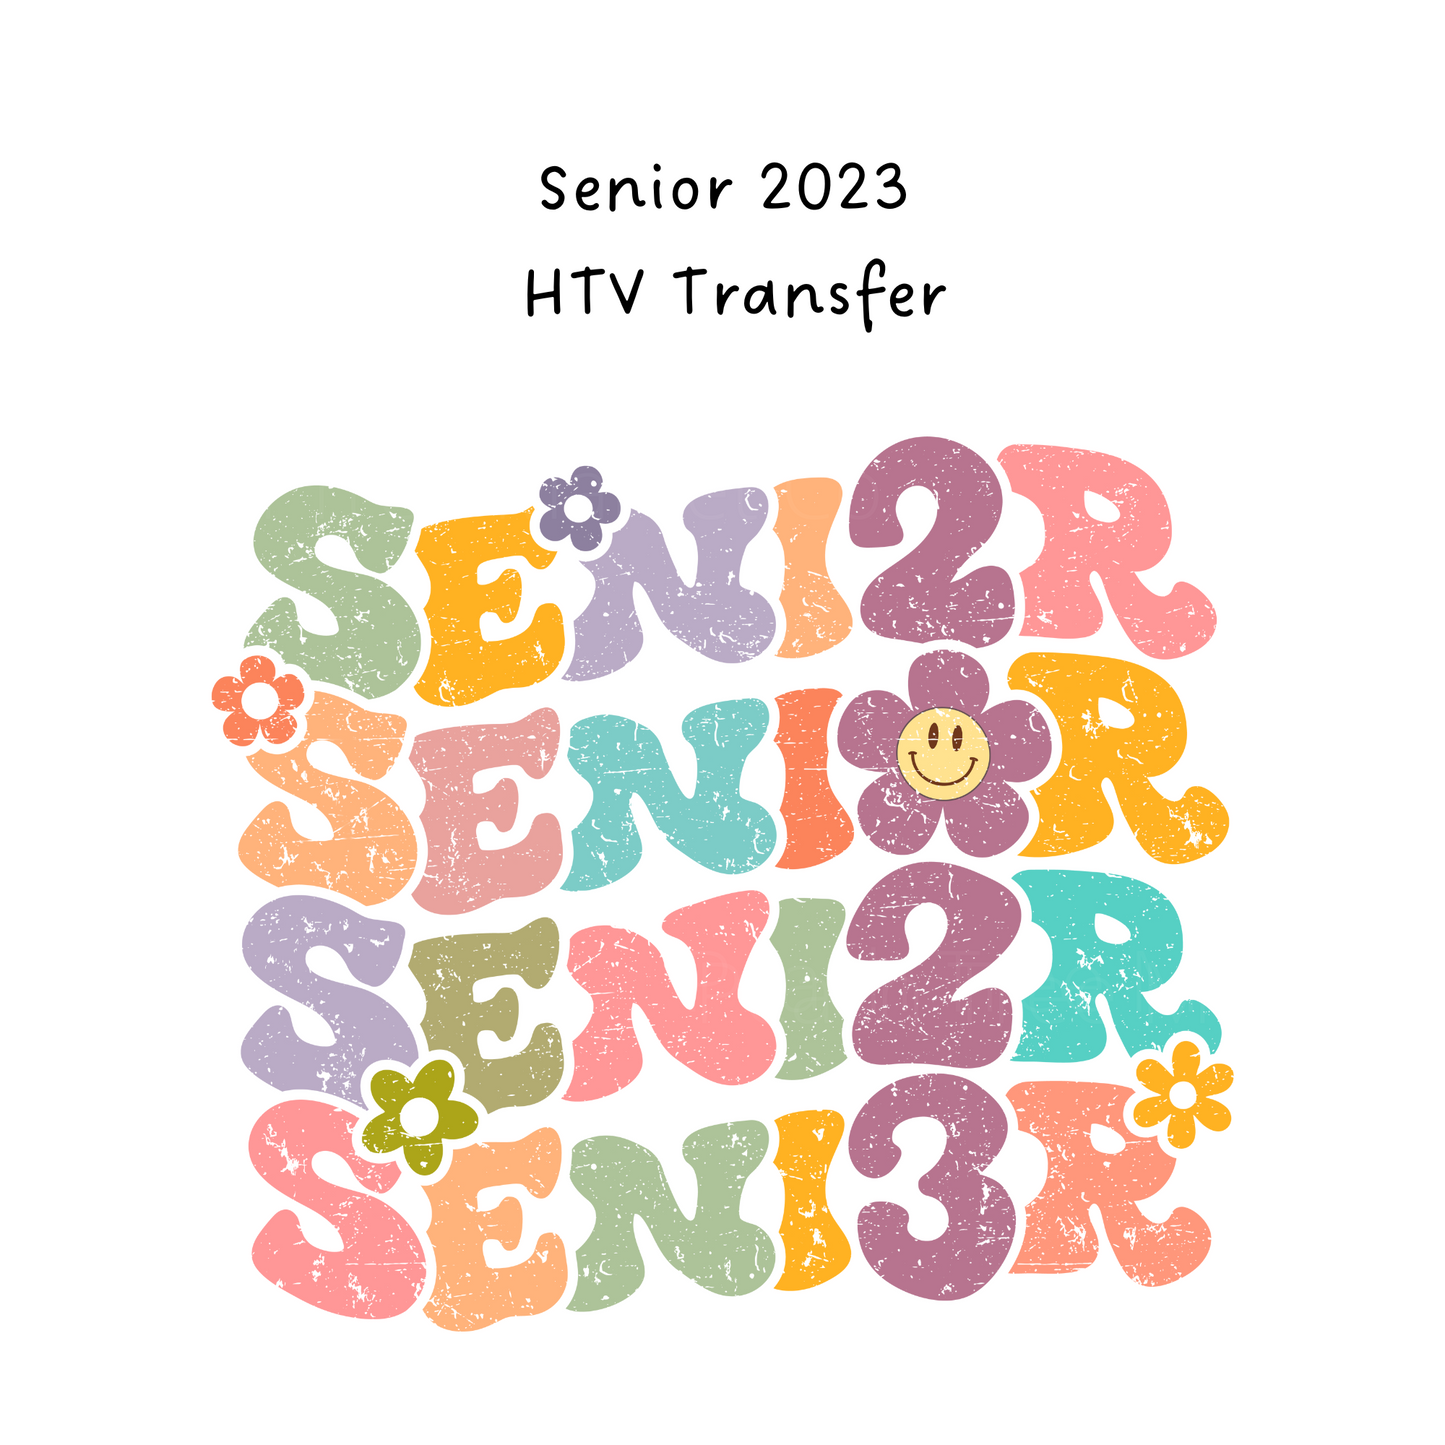 Senior 2023 HTV Transfer